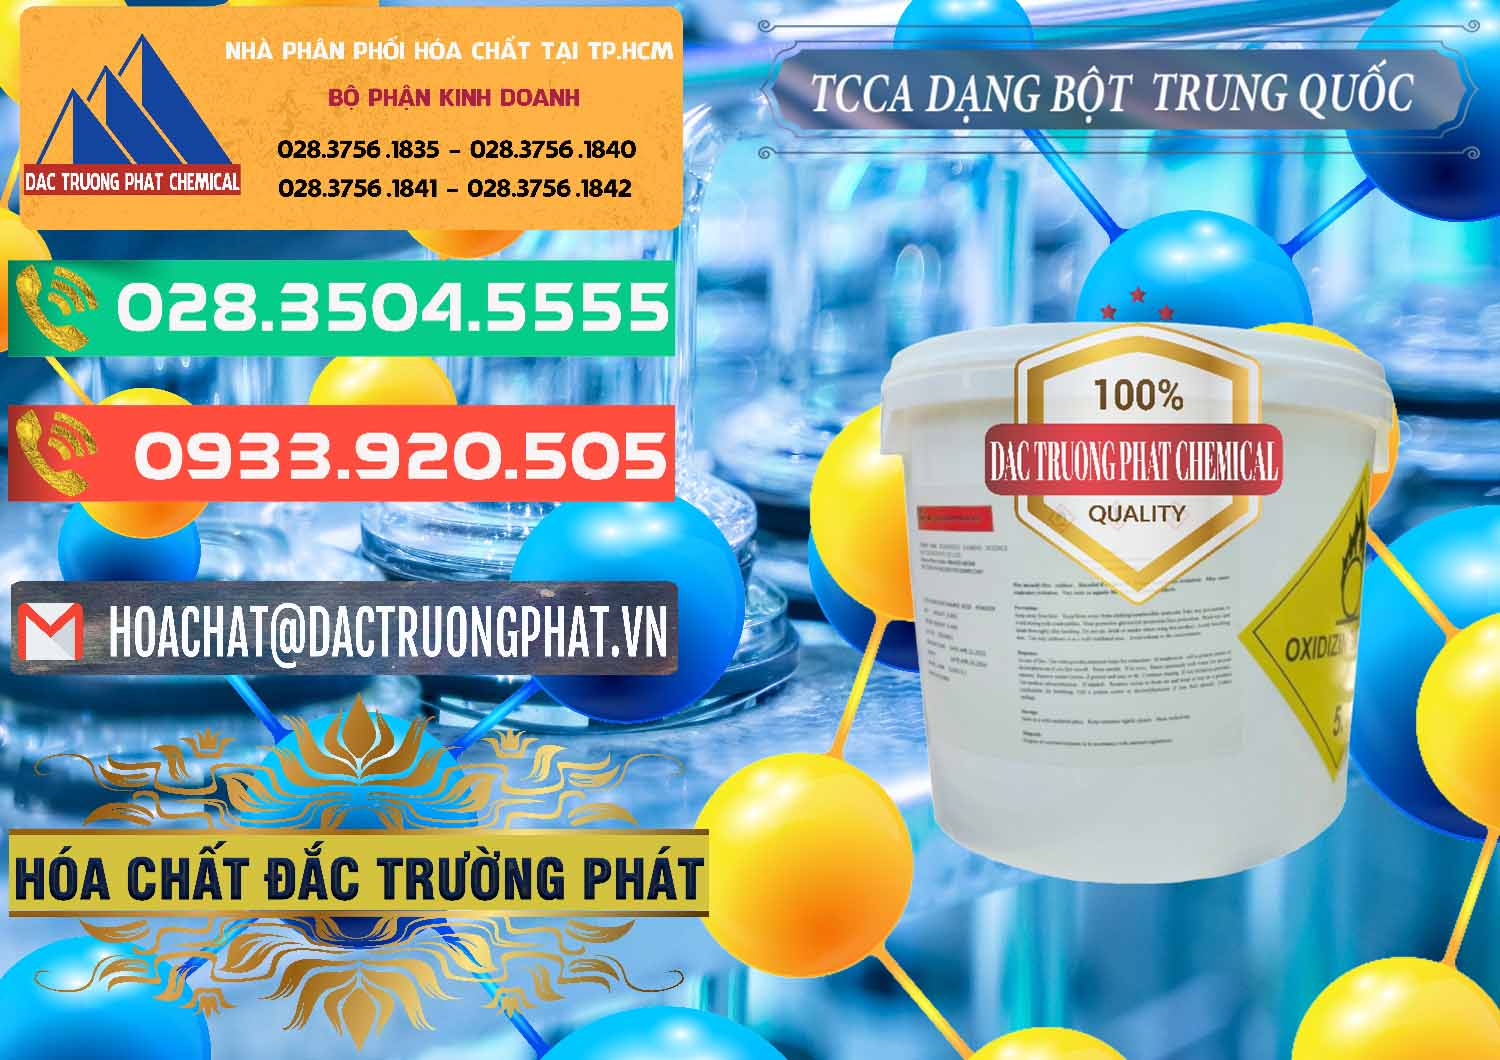 Nơi chuyên cung ứng - bán TCCA - Acid Trichloroisocyanuric Dạng Bột Thùng 5kg Trung Quốc China - 0378 - Cty bán - cung cấp hóa chất tại TP.HCM - congtyhoachat.com.vn